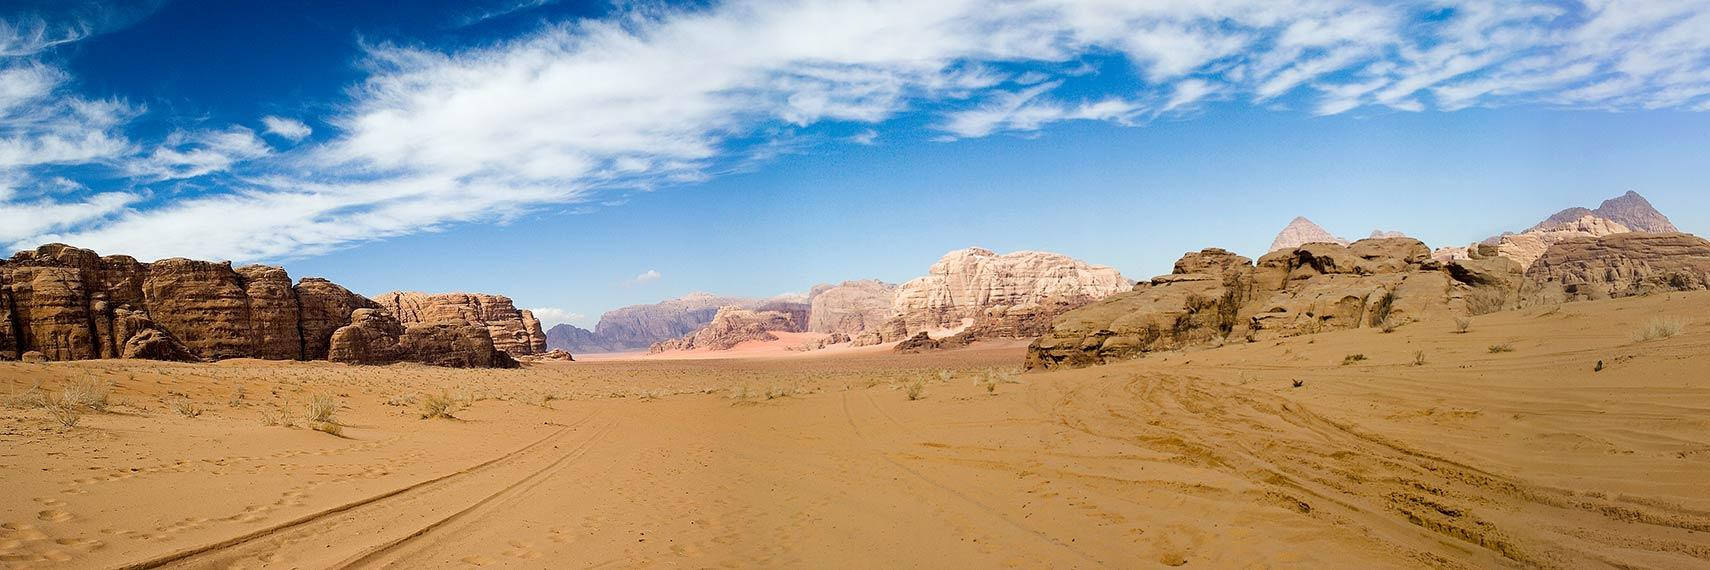 Jordan Desert Wilderness Background